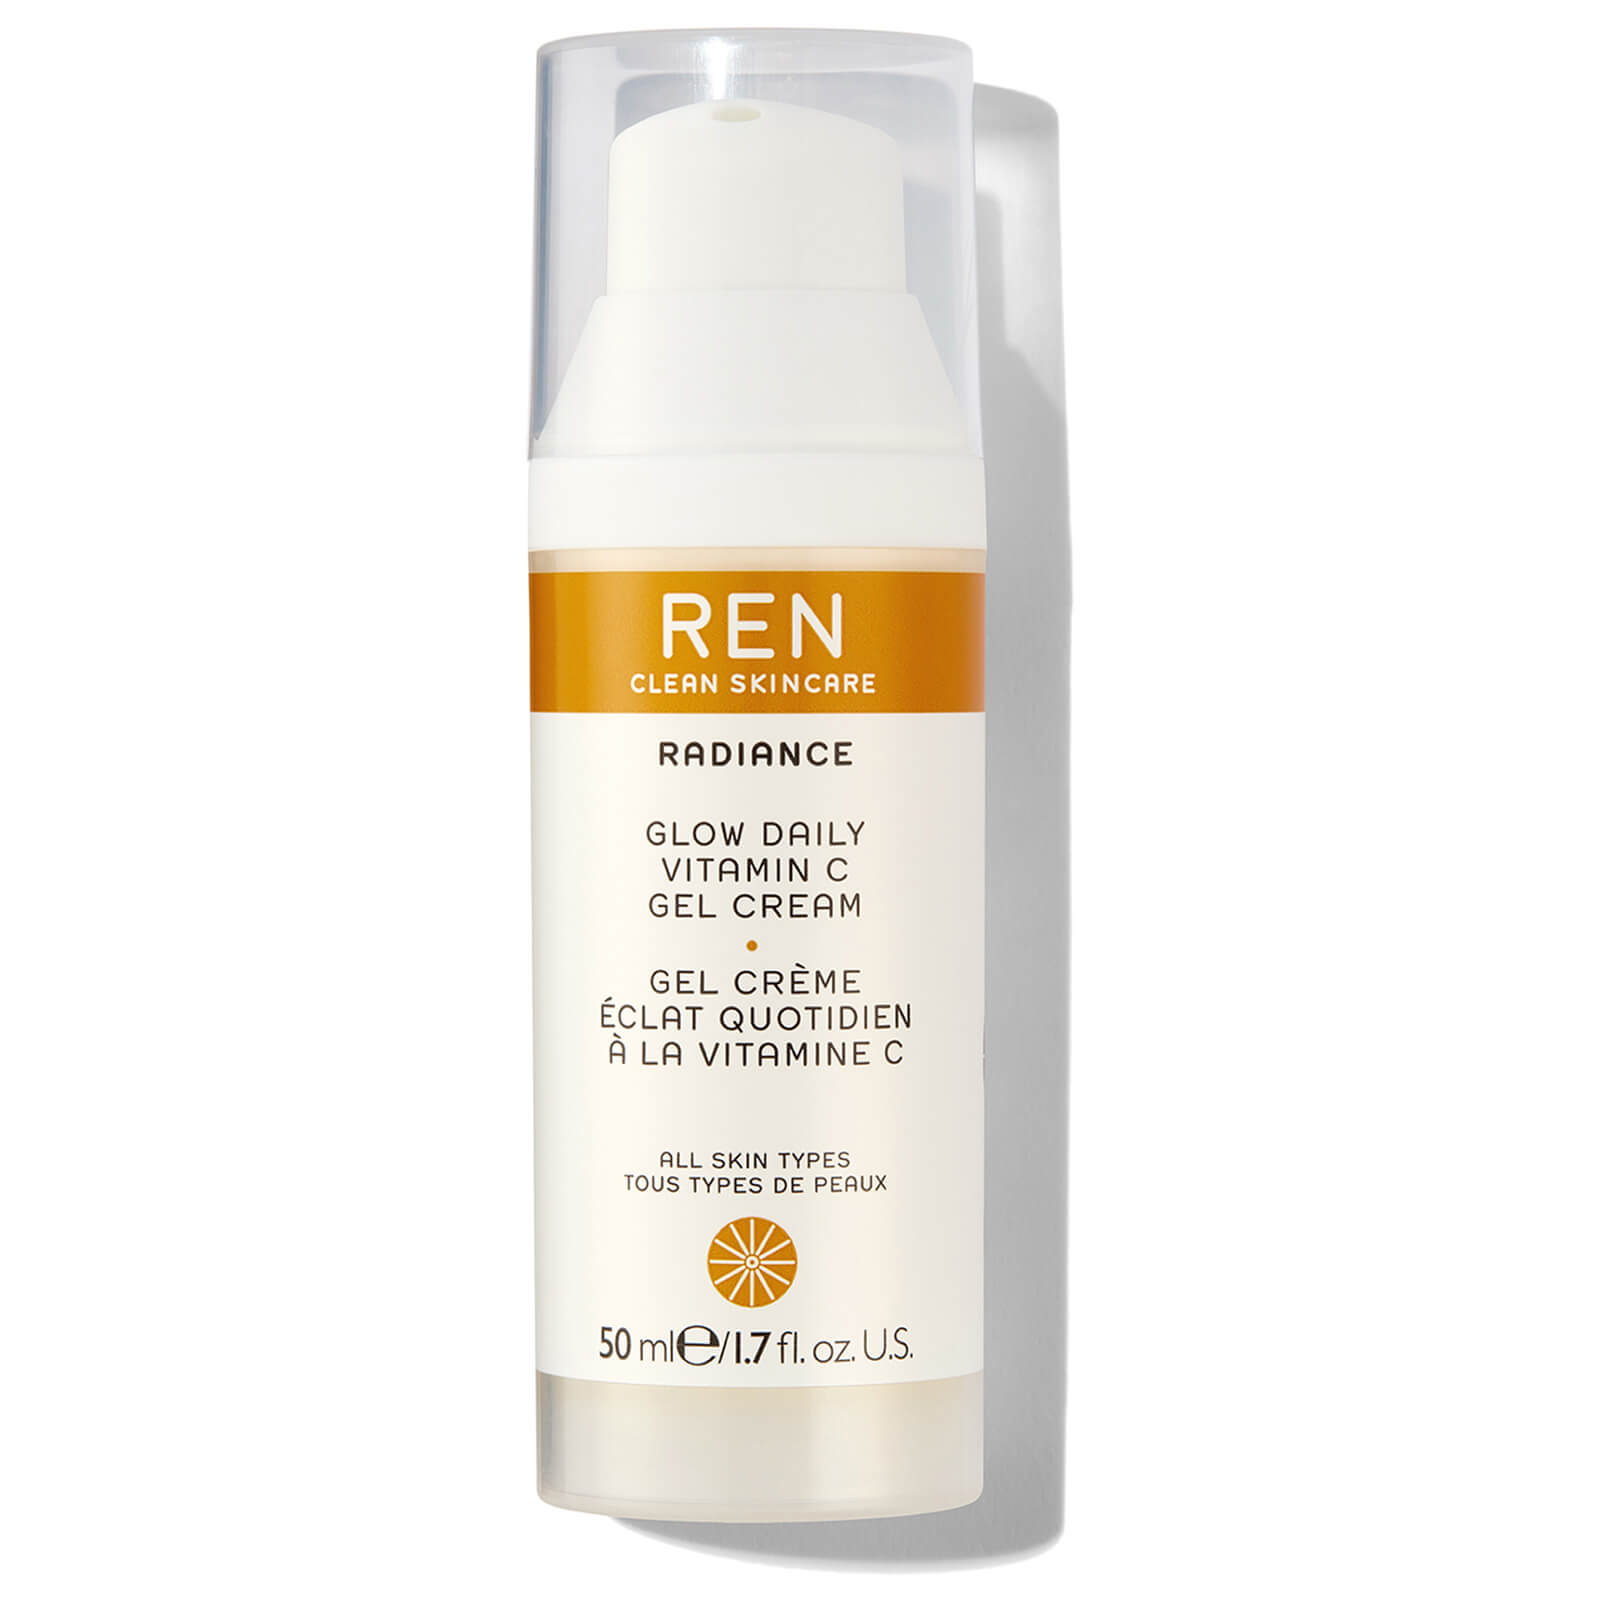 每日亮肤维生素 REN 50ml Clean 啫喱霜 Skincare